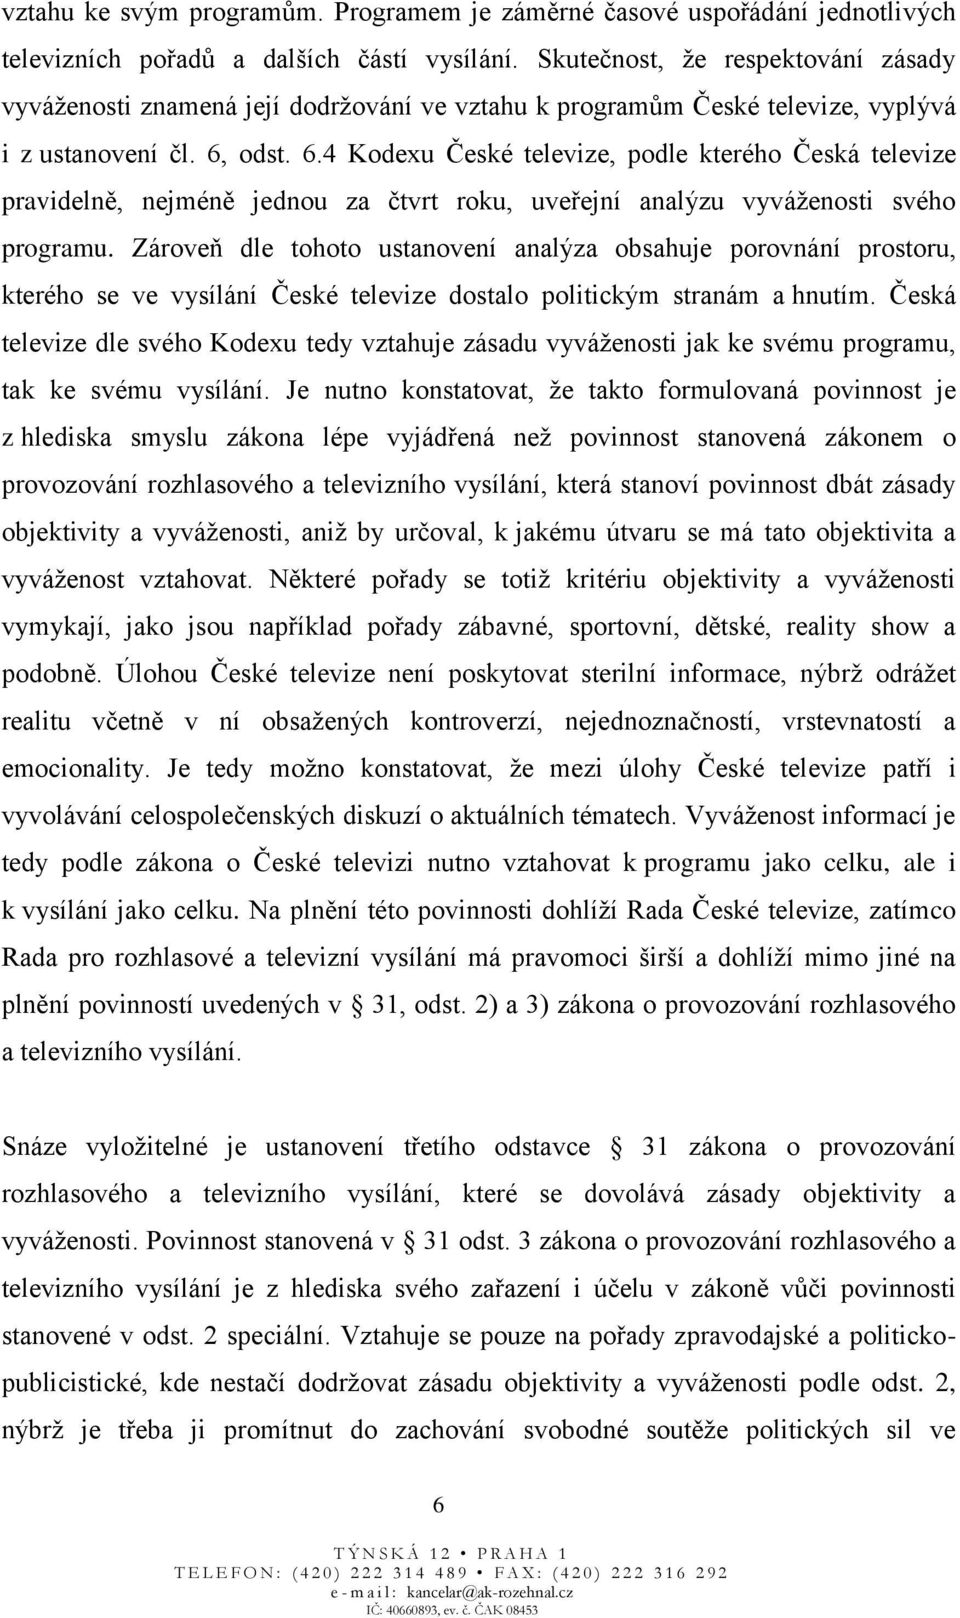 odst. 6.4 Kodexu České televize, podle kterého Česká televize pravidelně, nejméně jednou za čtvrt roku, uveřejní analýzu vyváženosti svého programu.